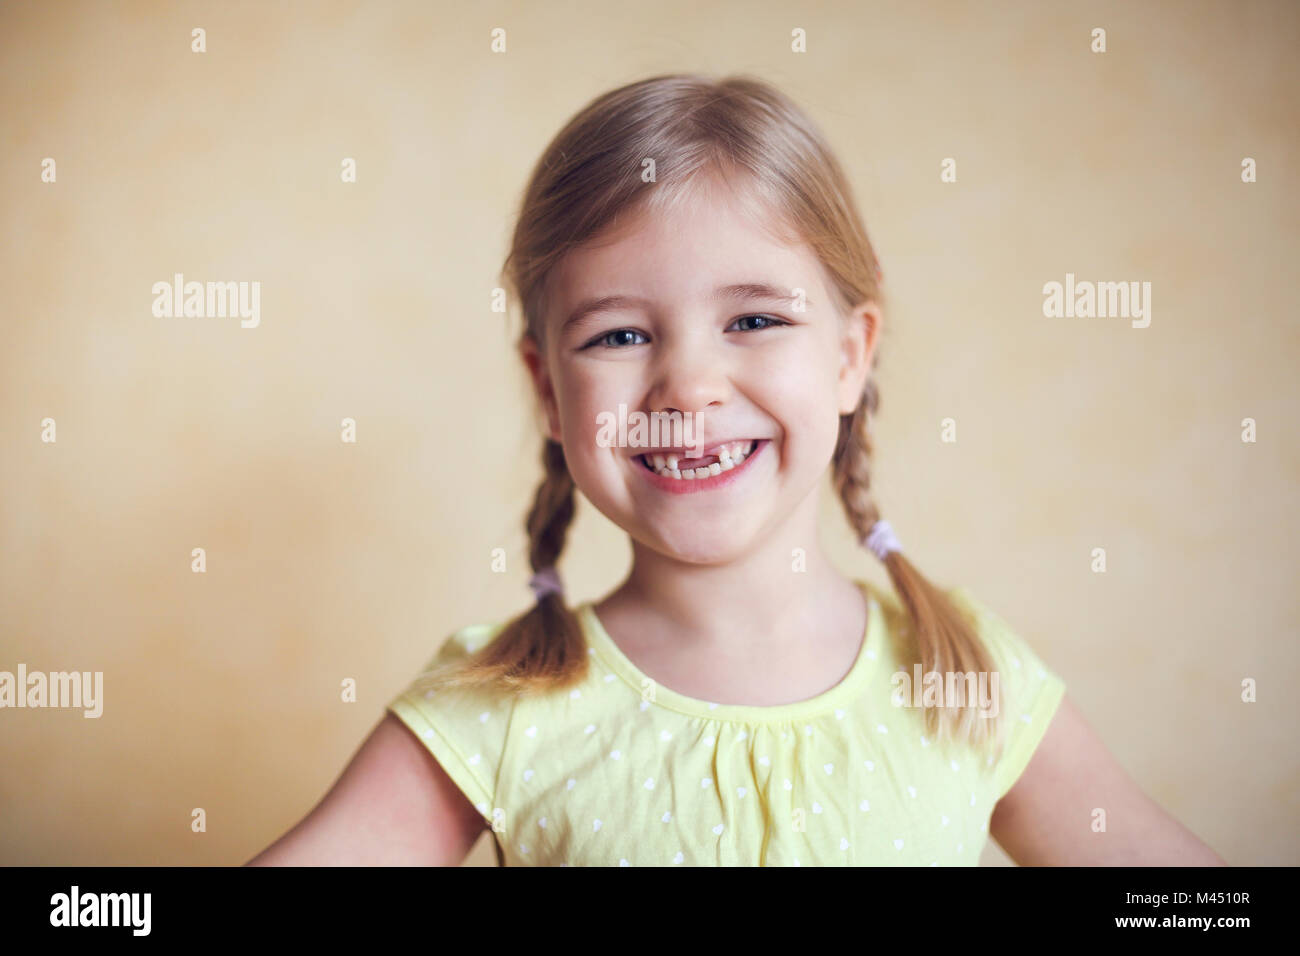 Felice dente perduto bambina ritratto, studio spara su sfondo giallo Foto Stock